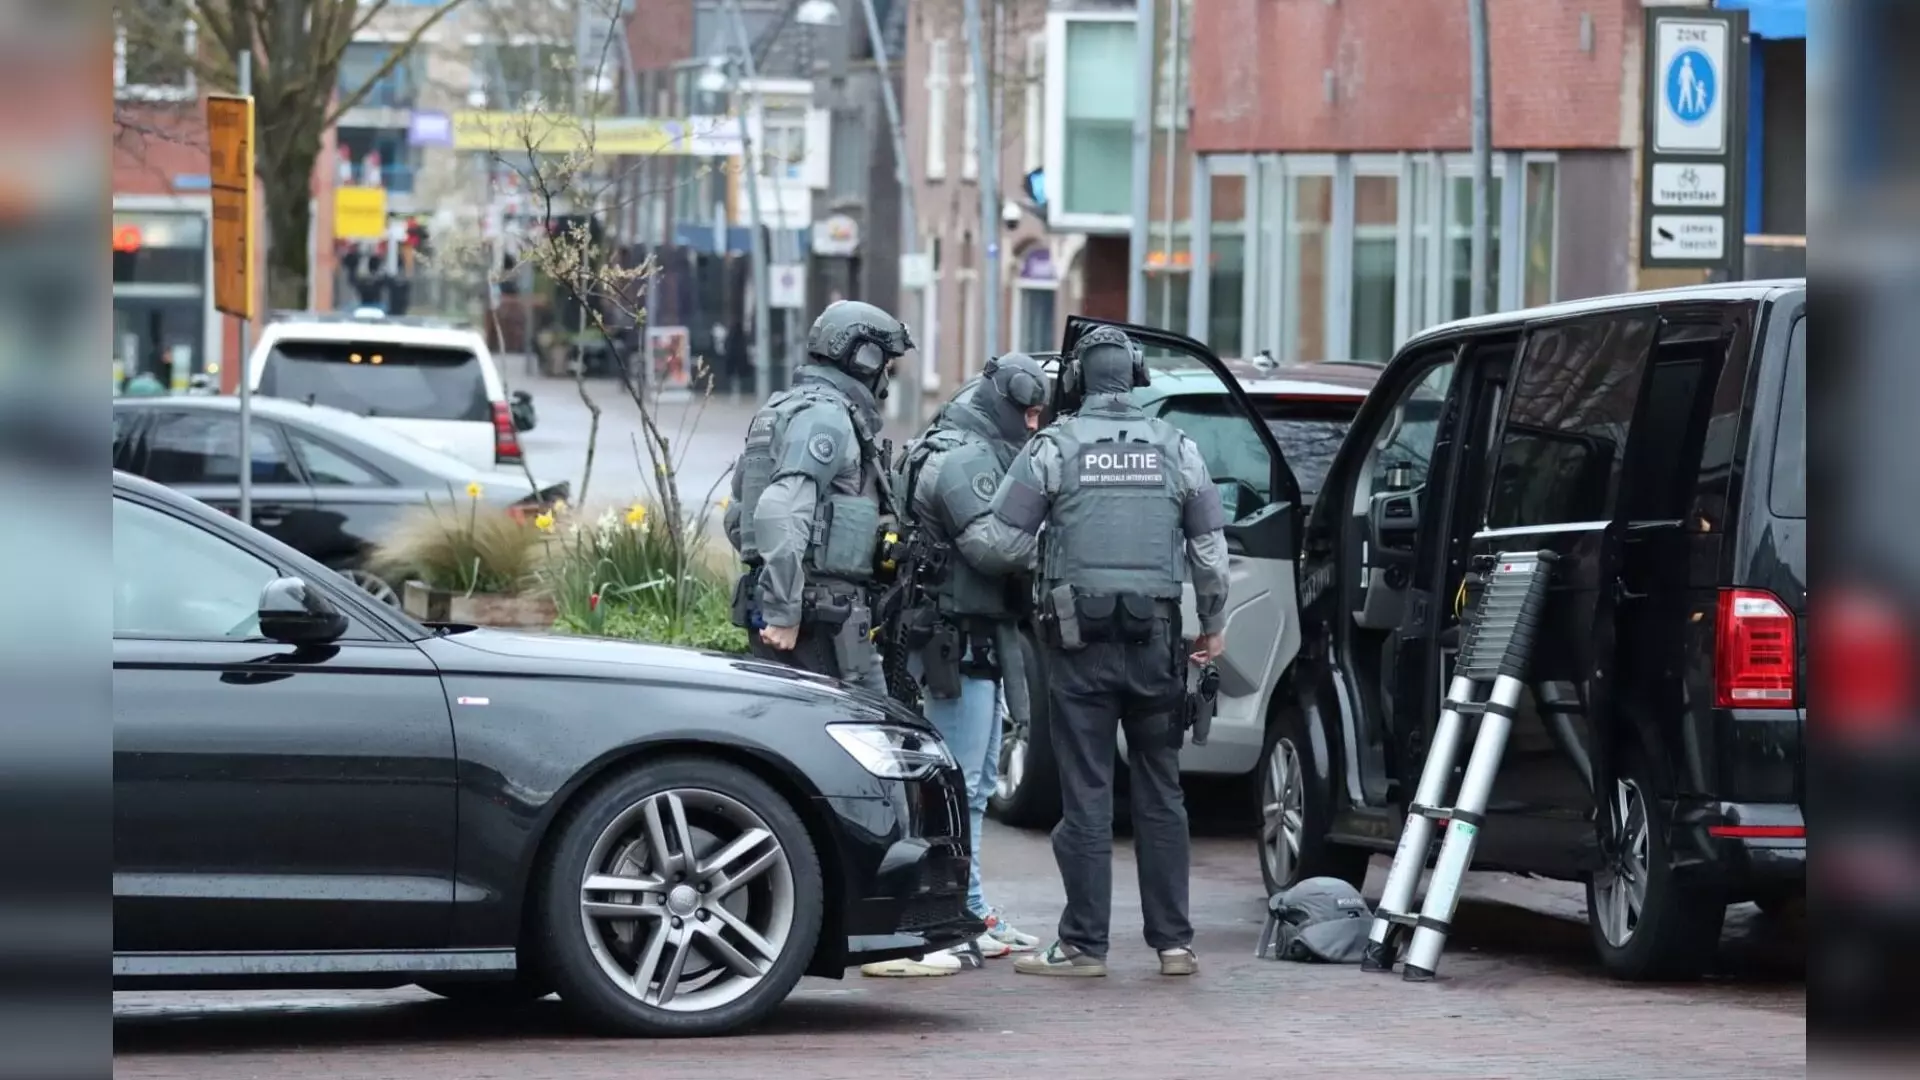 Неизвестный взял в заложники посетителей кафе в Нидерландах